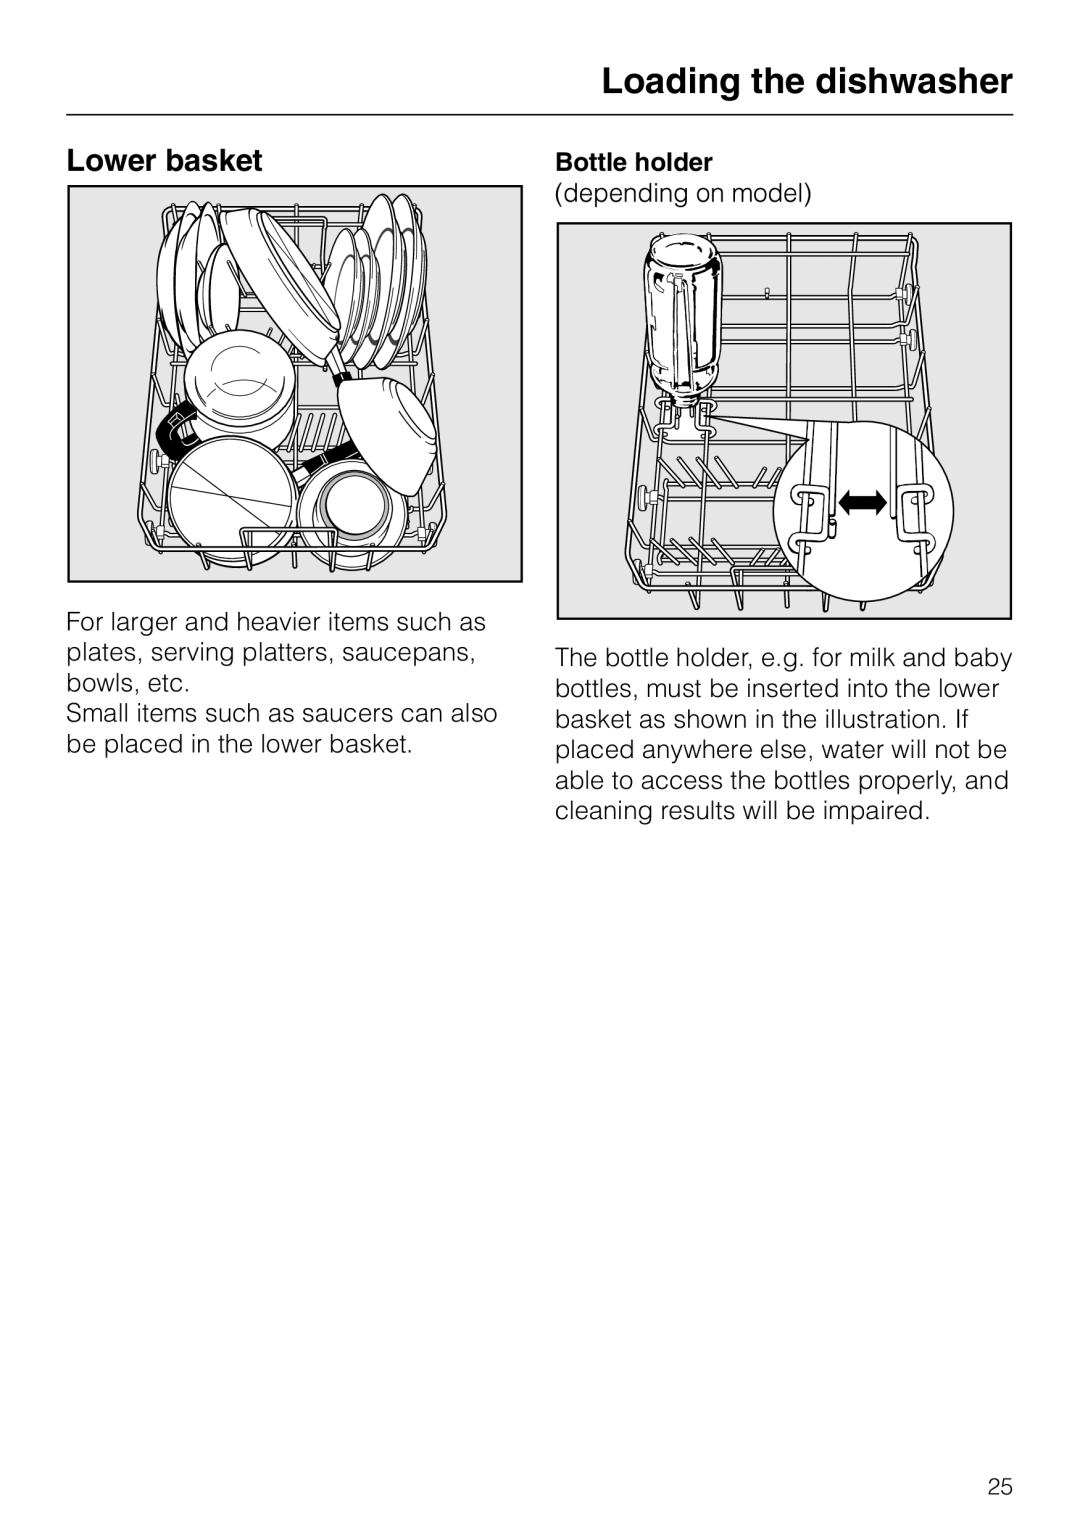 Miele dishwashers installation instructions Lower basket, Bottle holder, Loading the dishwasher 